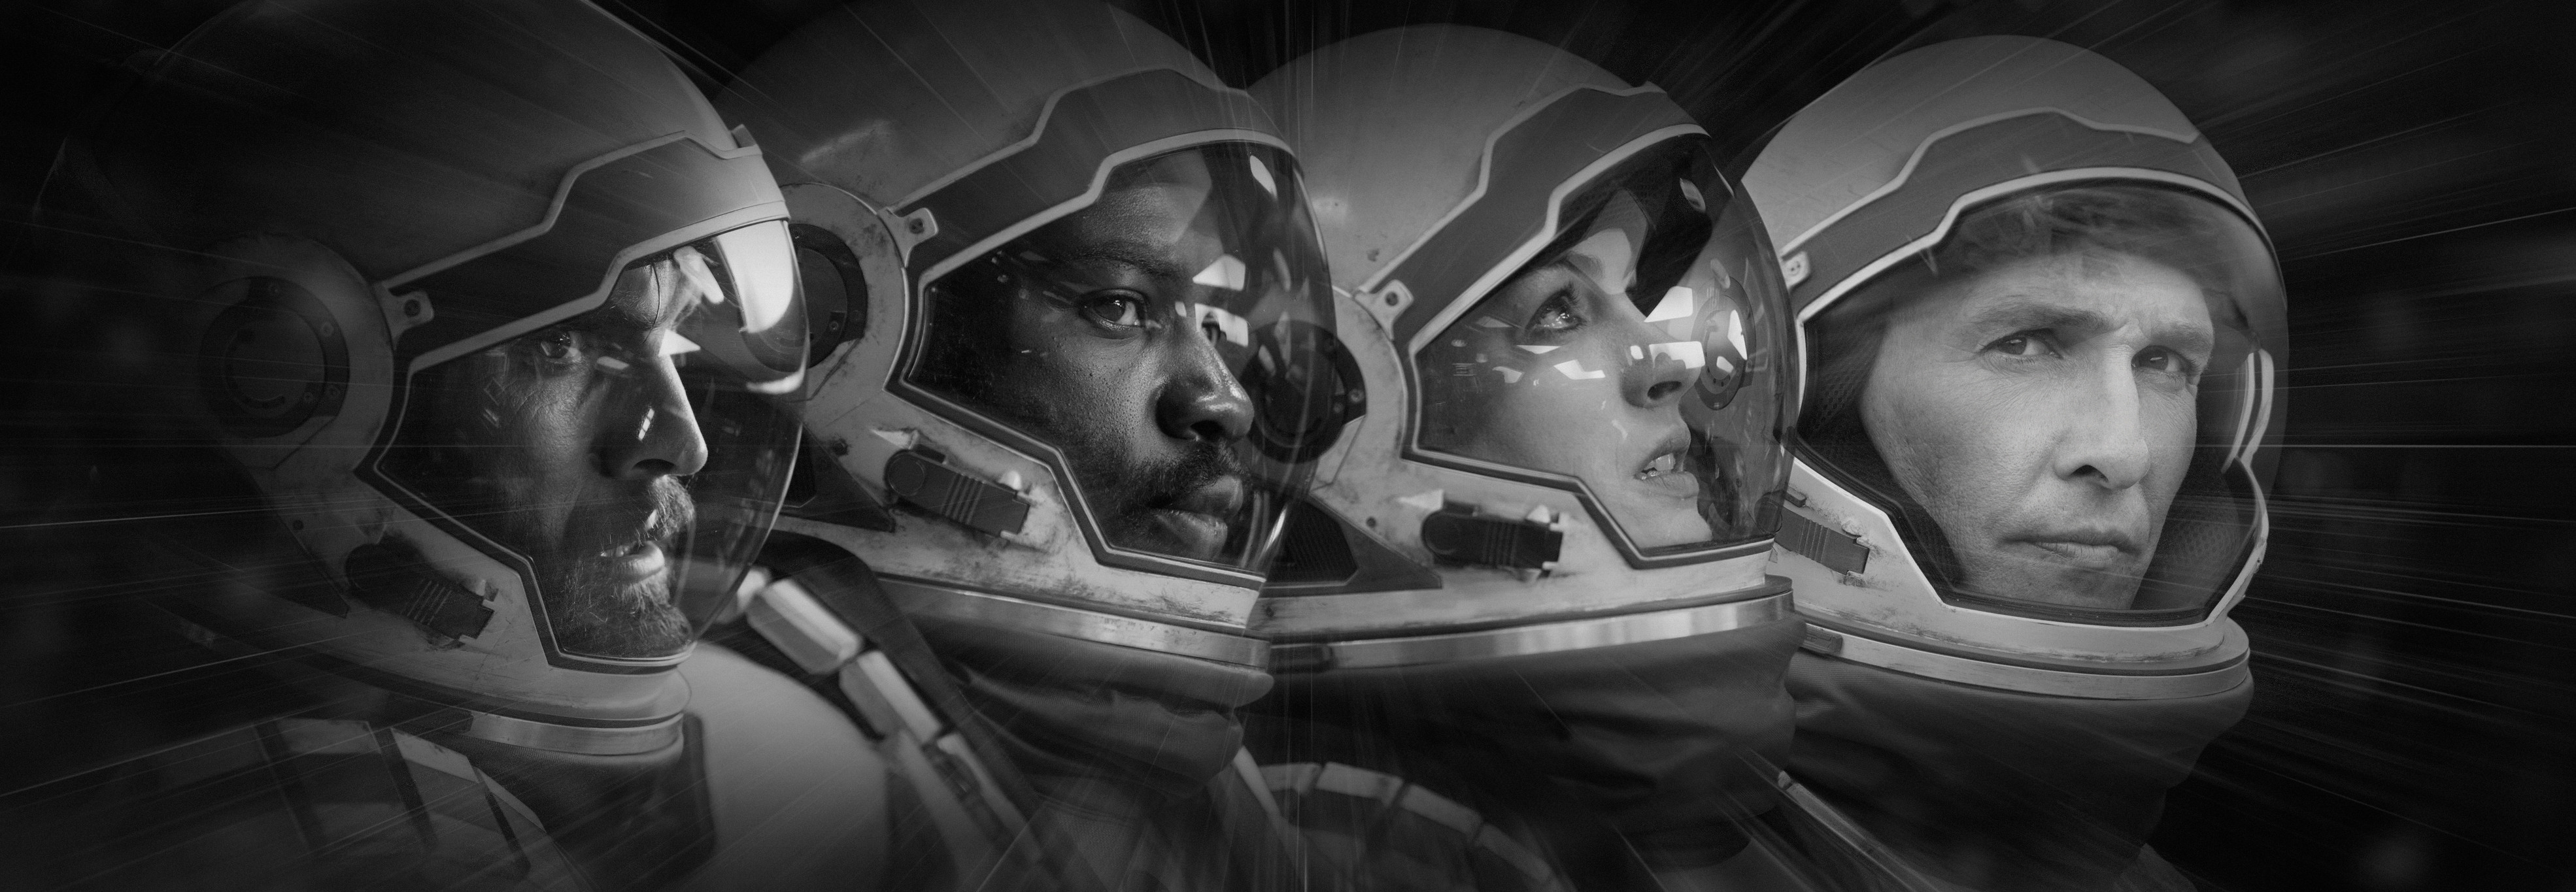 壁紙 3940x1365 宇宙飛行士 マシュー マコノヒー アン ハサウェイ インターステラー Christopher Nolan ヘルメット 映画 ファンタジー 有名人 少女 ダウンロード 写真